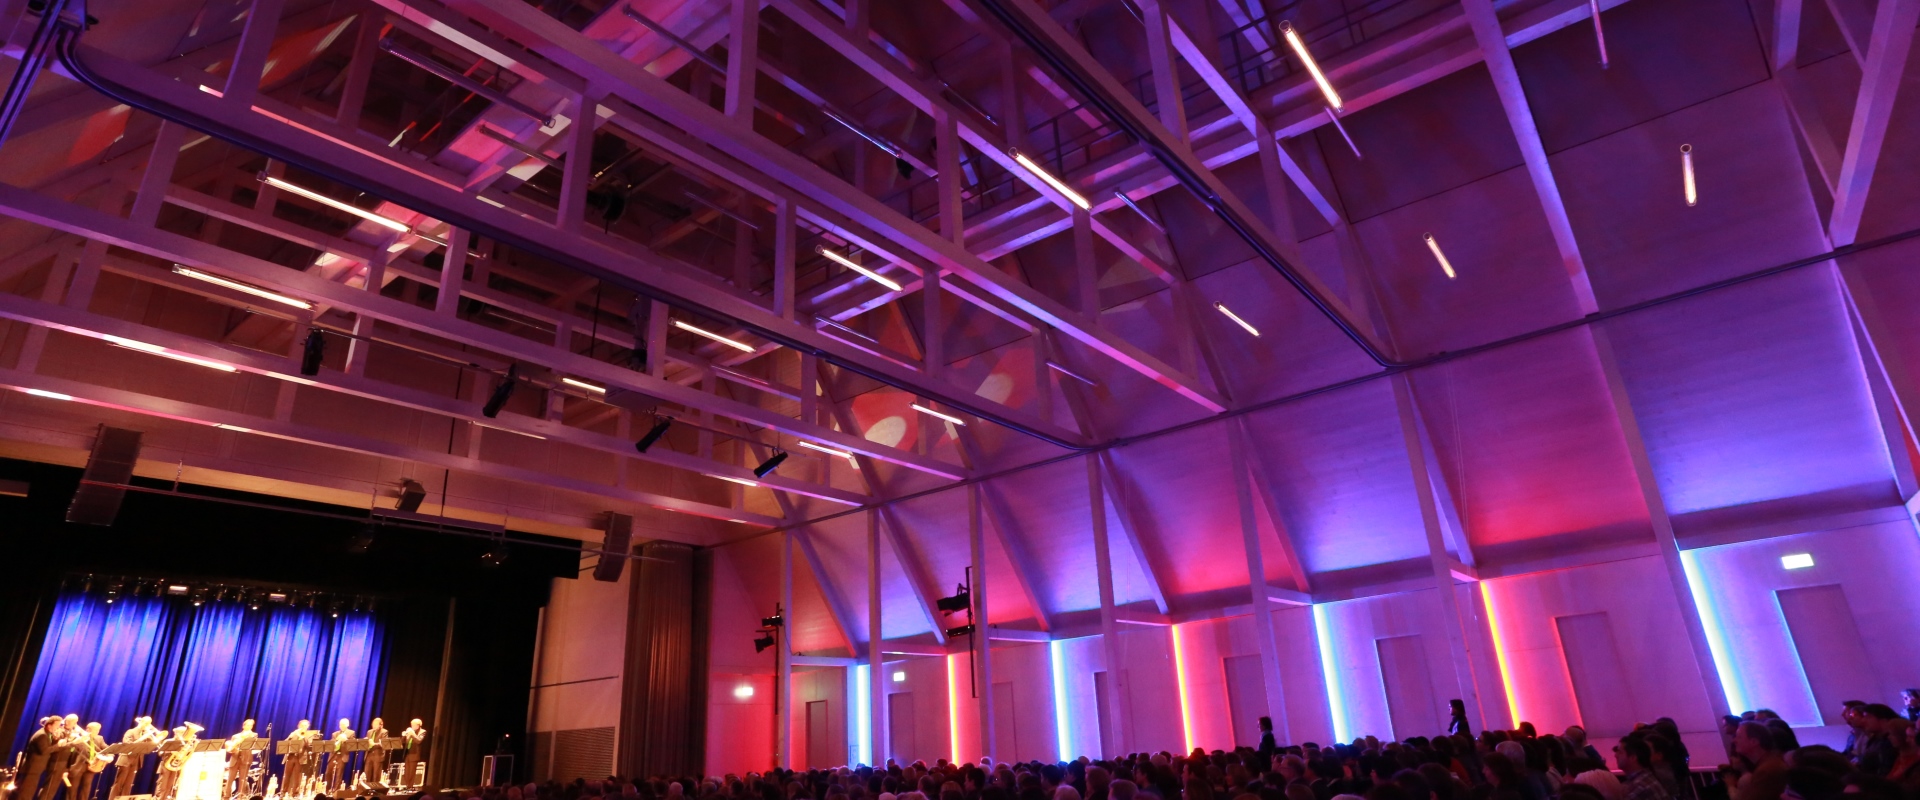 Raiffeisen-Saal Reihenbestuhlung Konzert Dachstuhl bunte Seitenbeleuchtung Forum Altötting